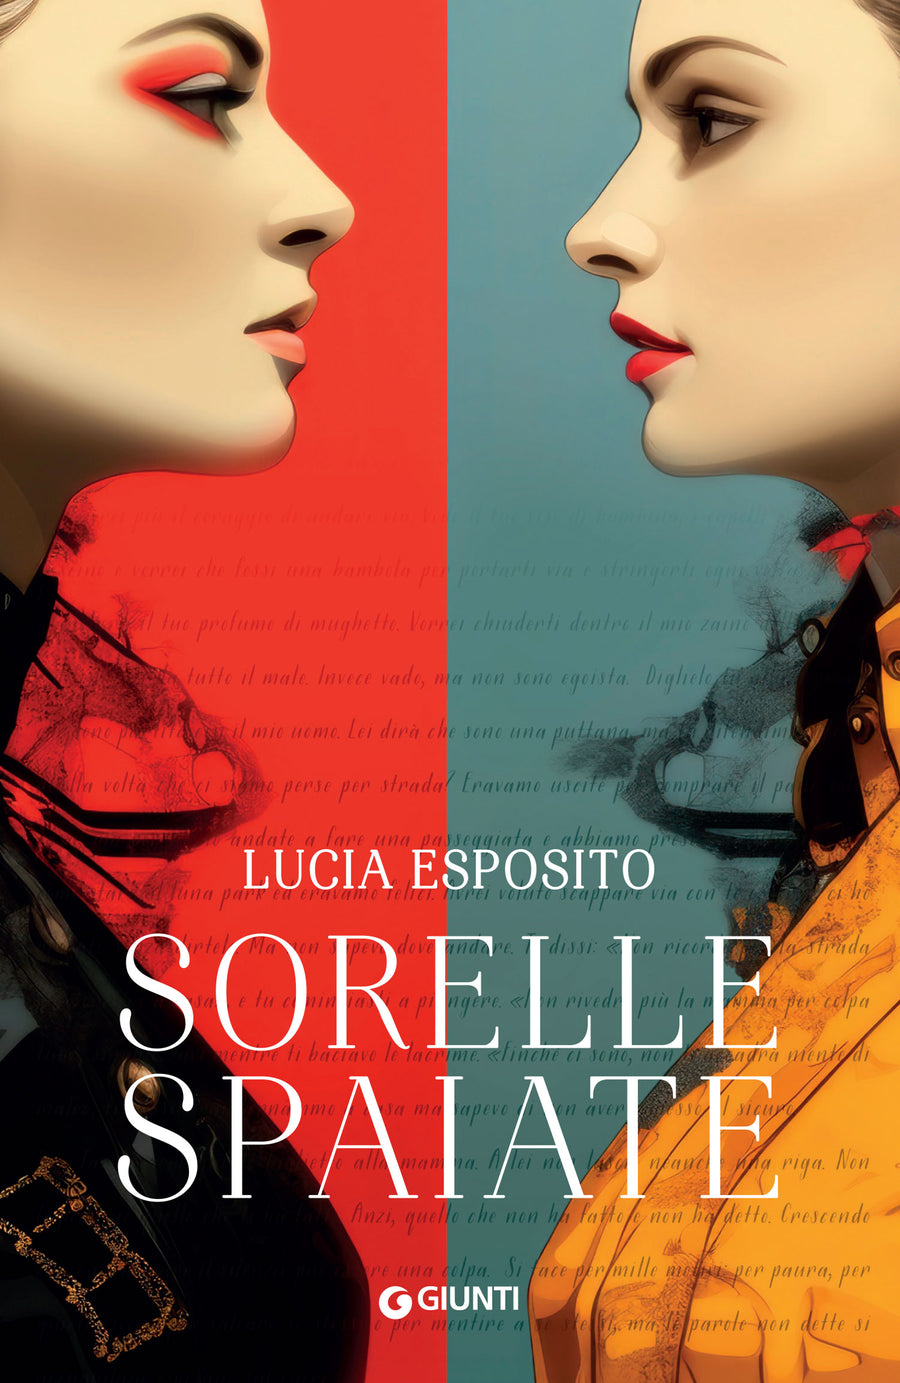 Lucia Esposito racconta per la prima volta "Sorelle spaiate". Appuntamento a Milano